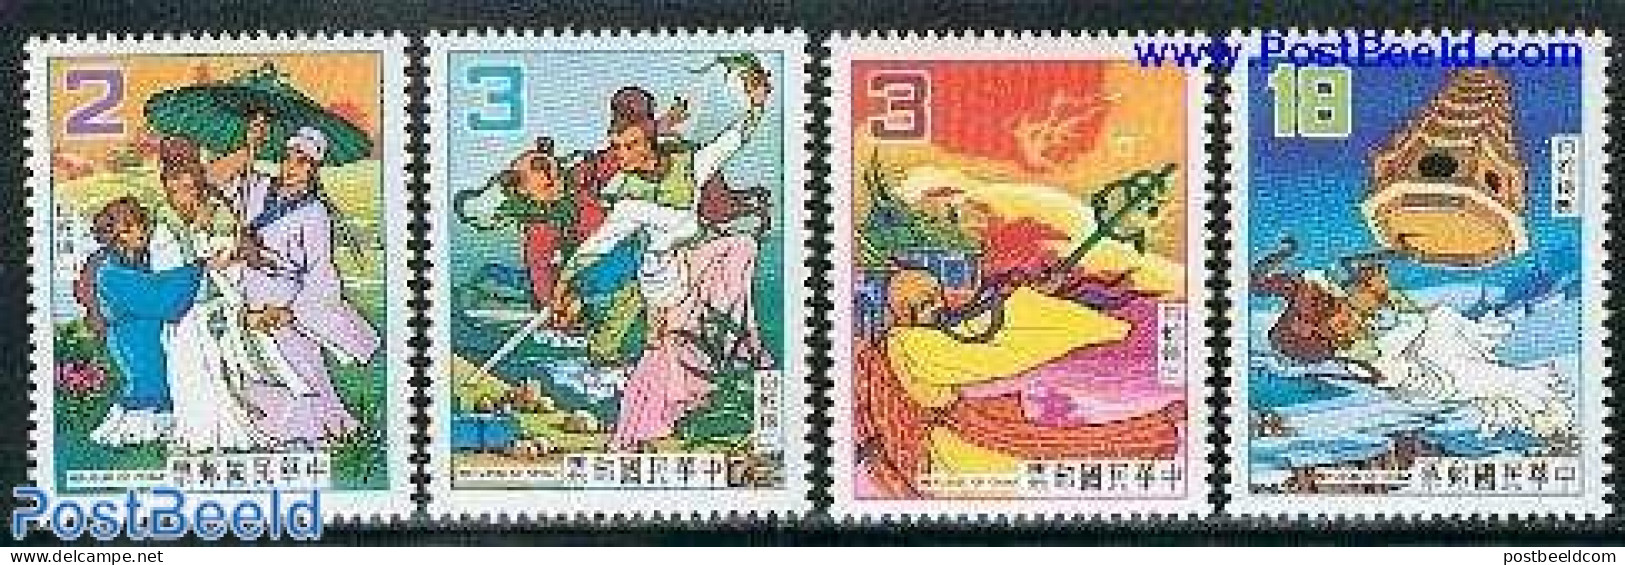 Taiwan 1983 Fairy Tales 4v, Mint NH, Art - Fairytales - Märchen, Sagen & Legenden